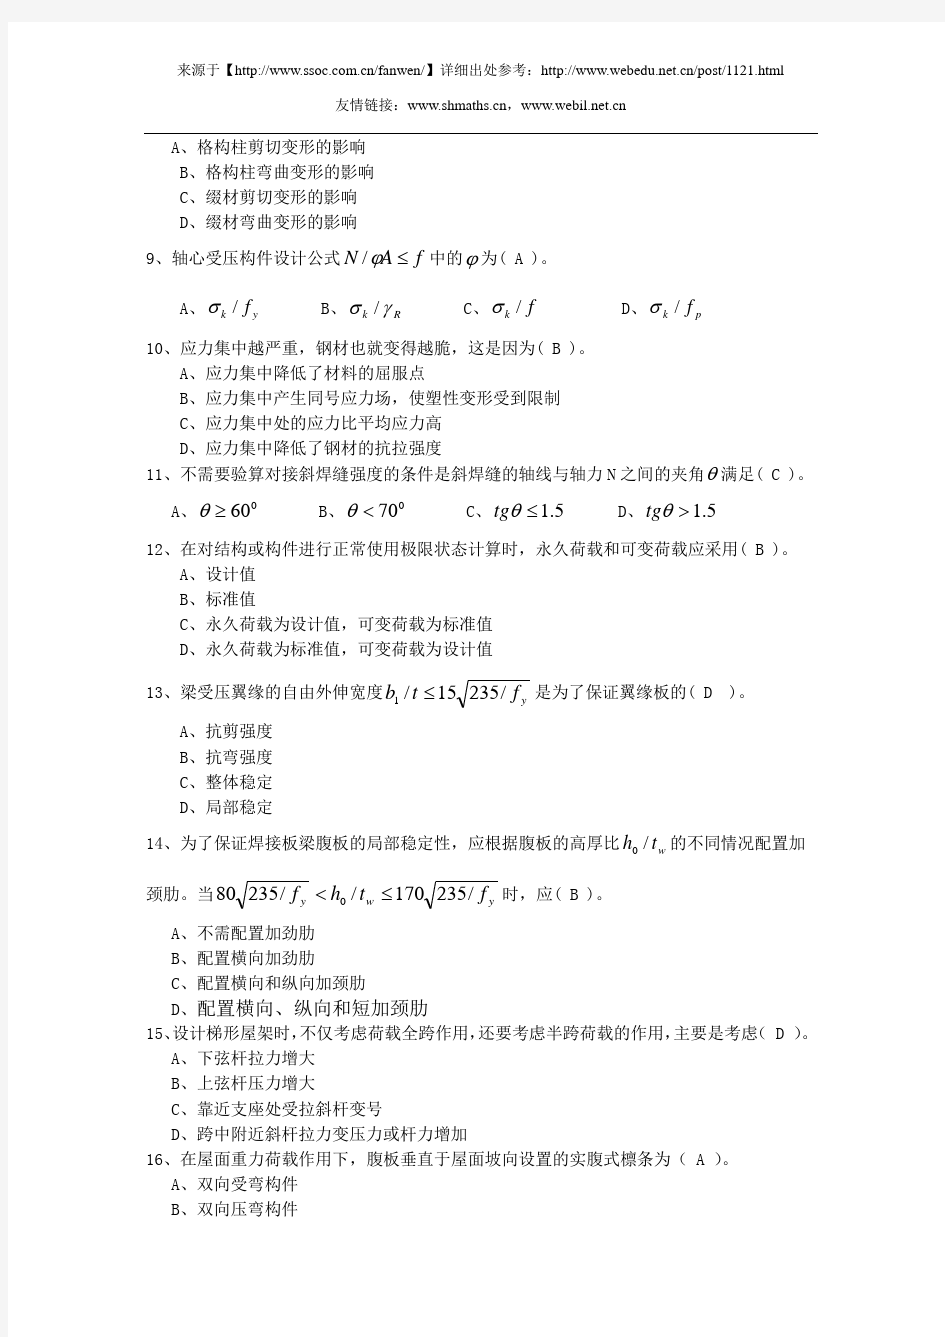 中国地质大学(北京)网络教育学院课程考试